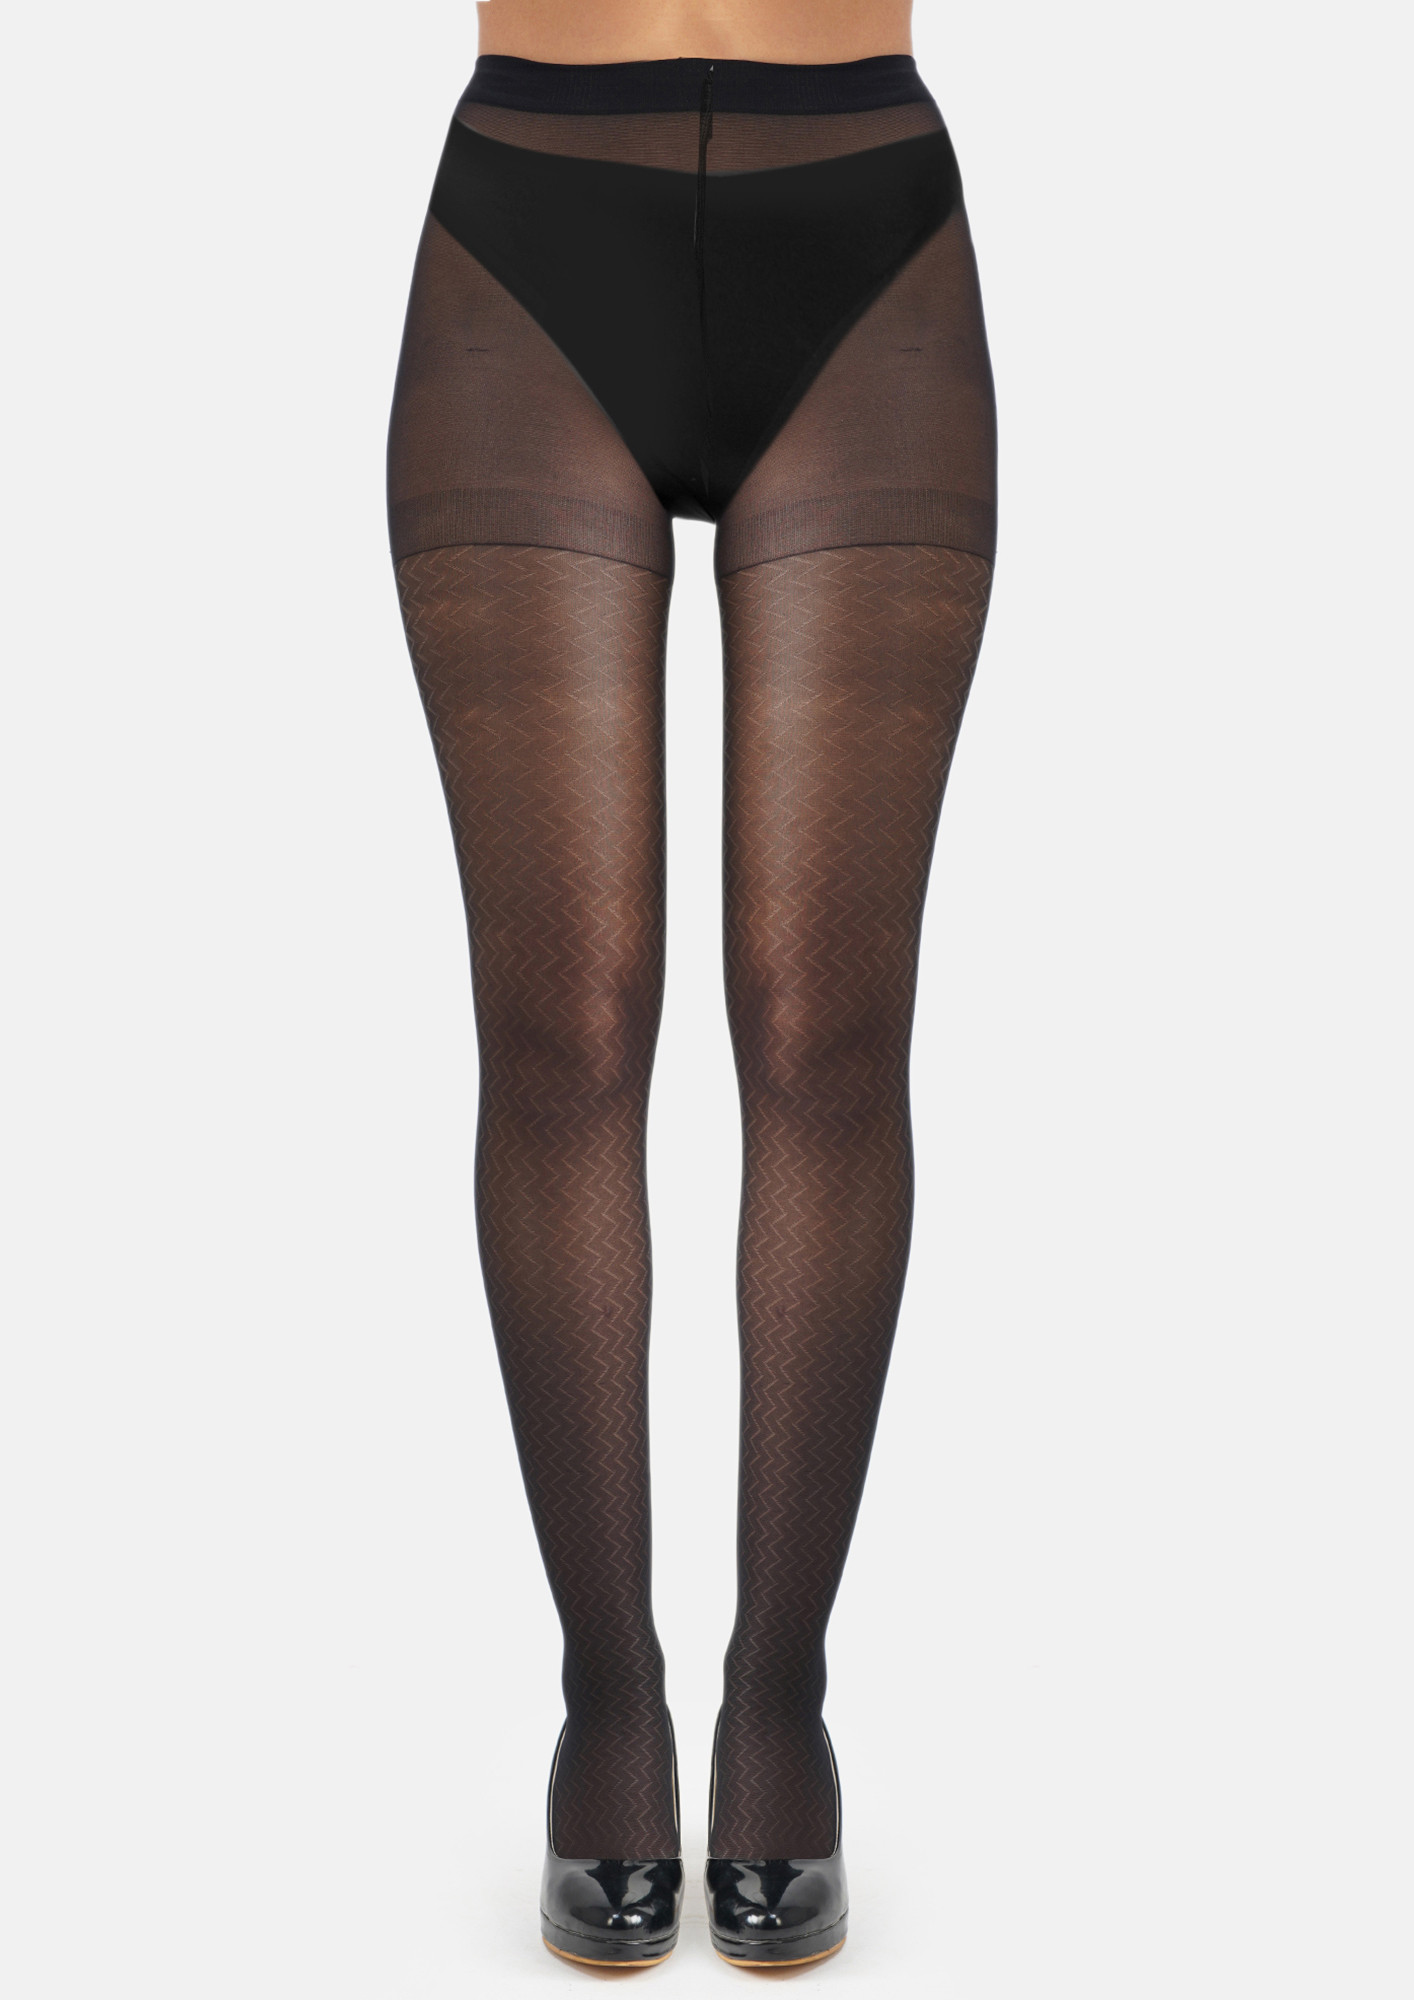 Buy NEXT2SKIN Women's Nylon Sheer Transparent Pattern Pantyhose